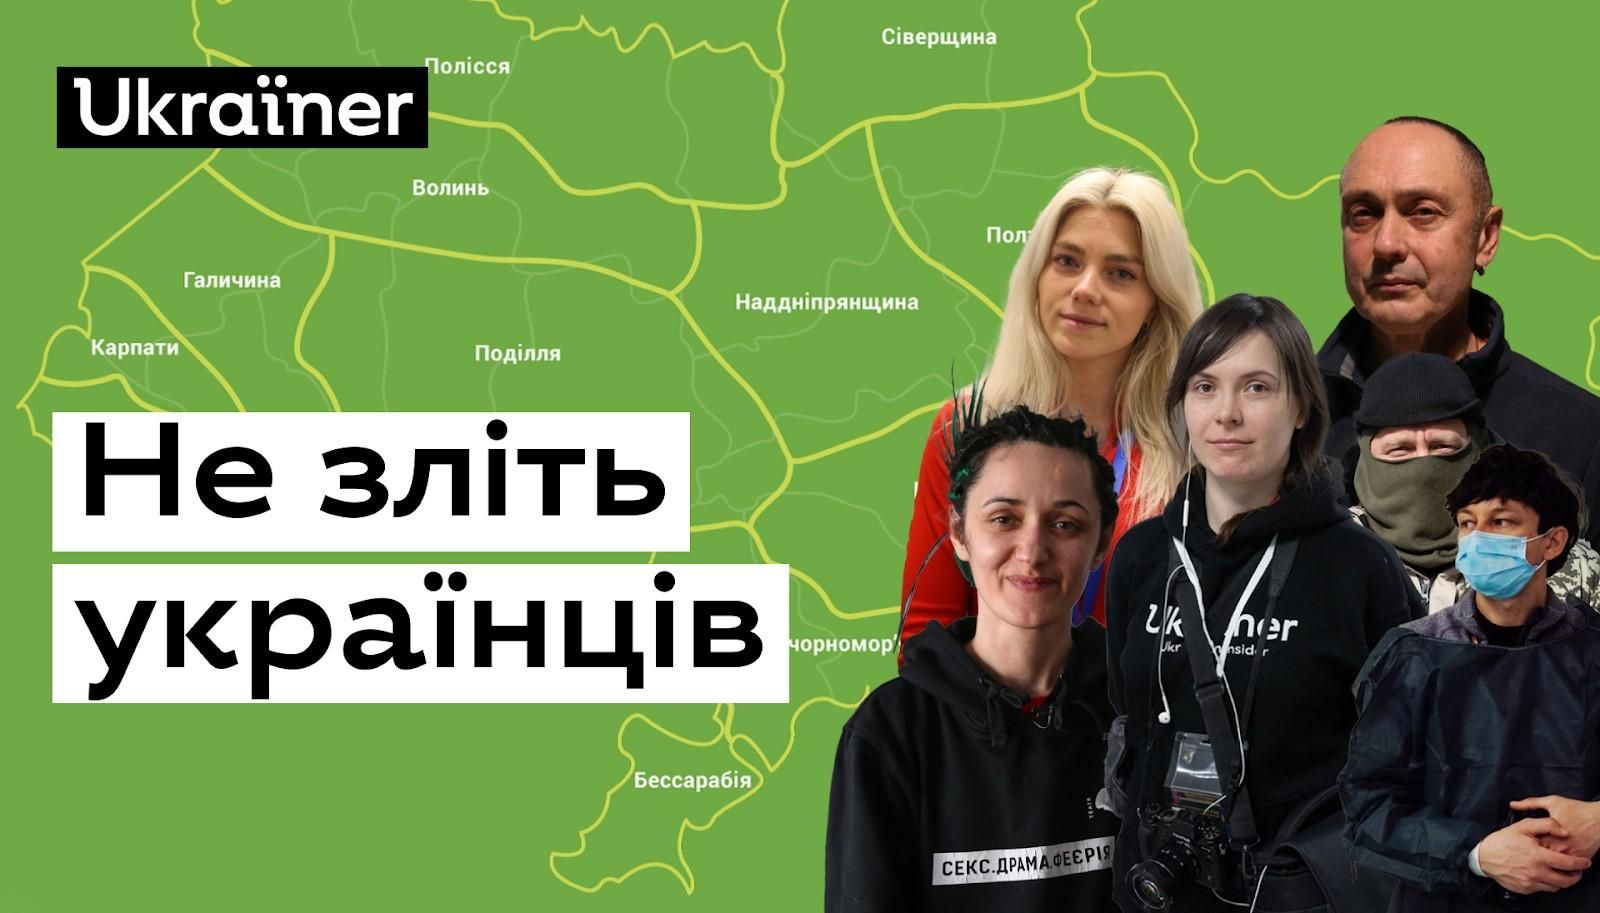 "Не злите украинцев!": Ukraїner презентовал документальный фильм